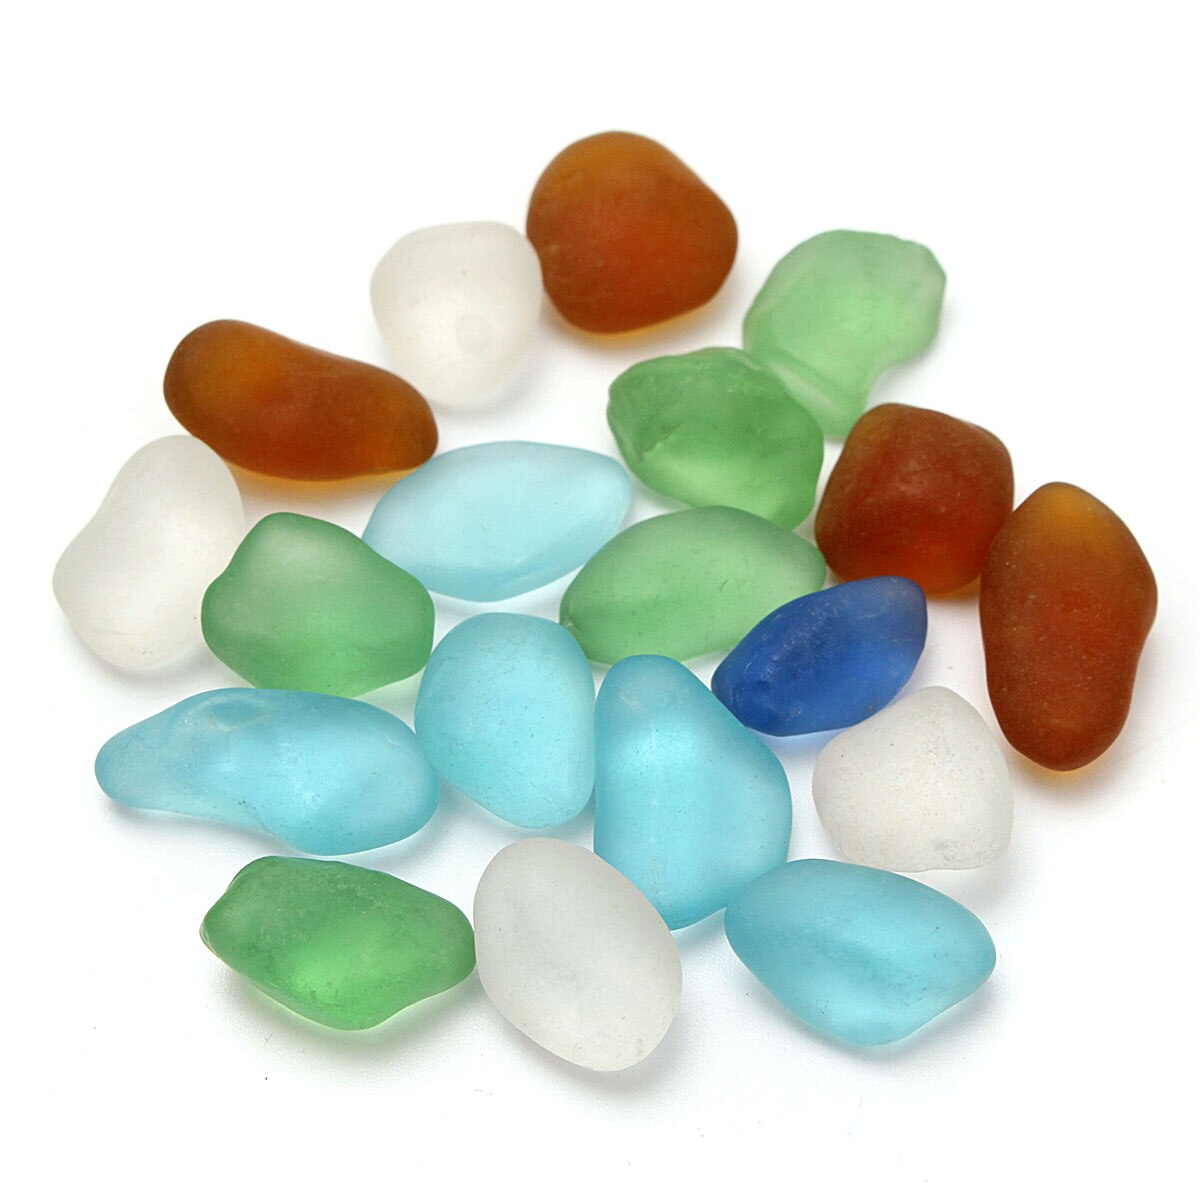 20 stk havstrand glasperler blandede farver bulk blå grøn uborede havstrand glasperler bulk smykker vedhæng indretning 10-16mm